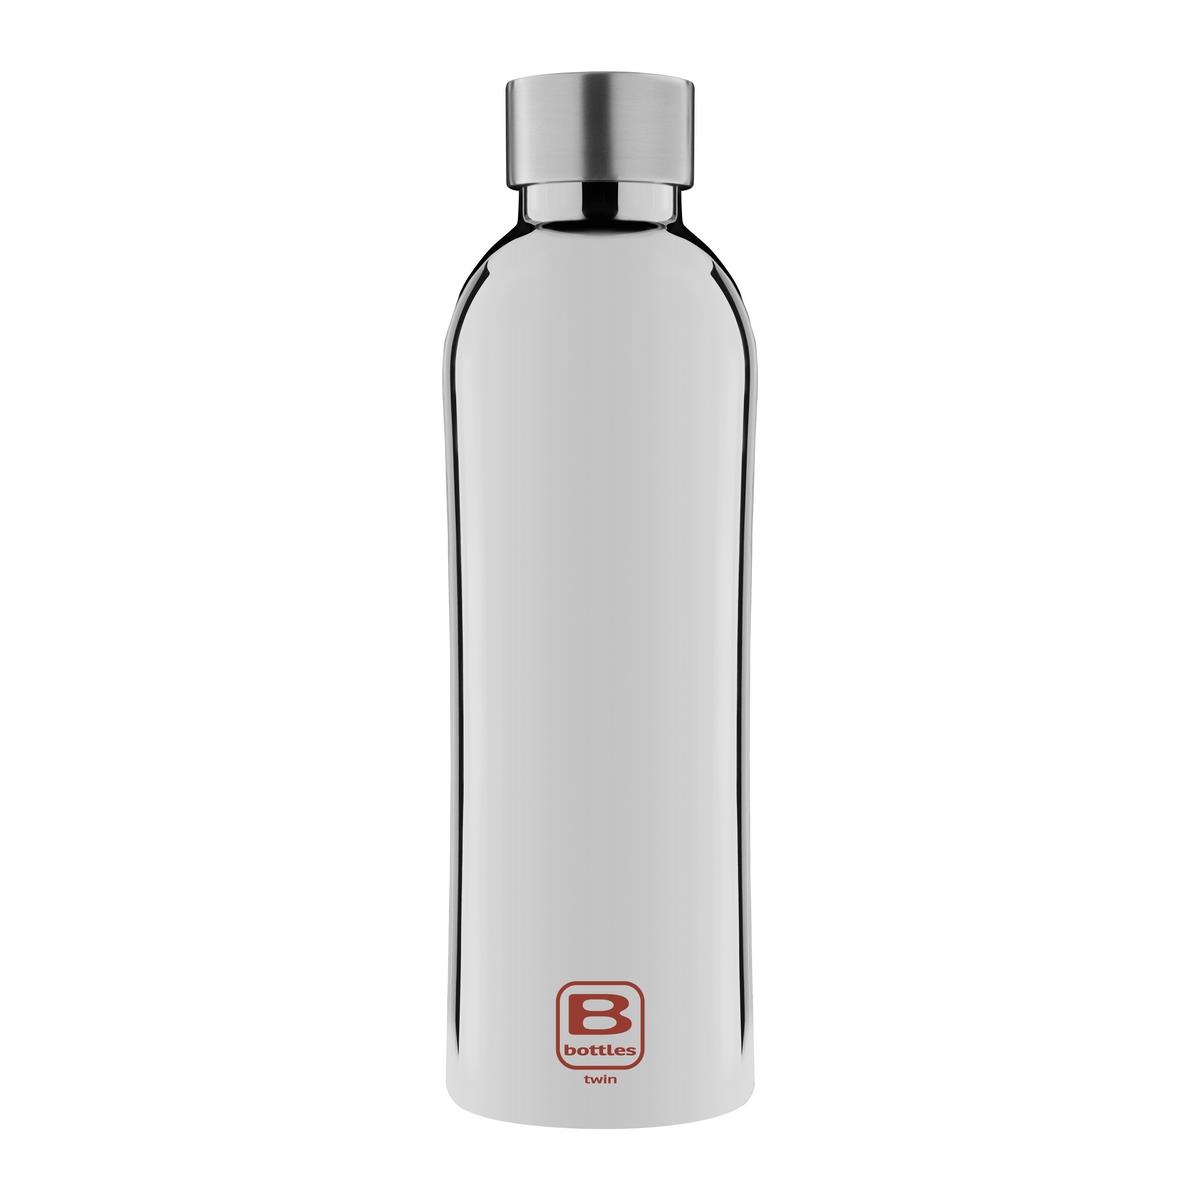 B Bottles Twin - Silver Lux - 800 ml - Bouteille thermique double paroi en acier inoxydable 18/10